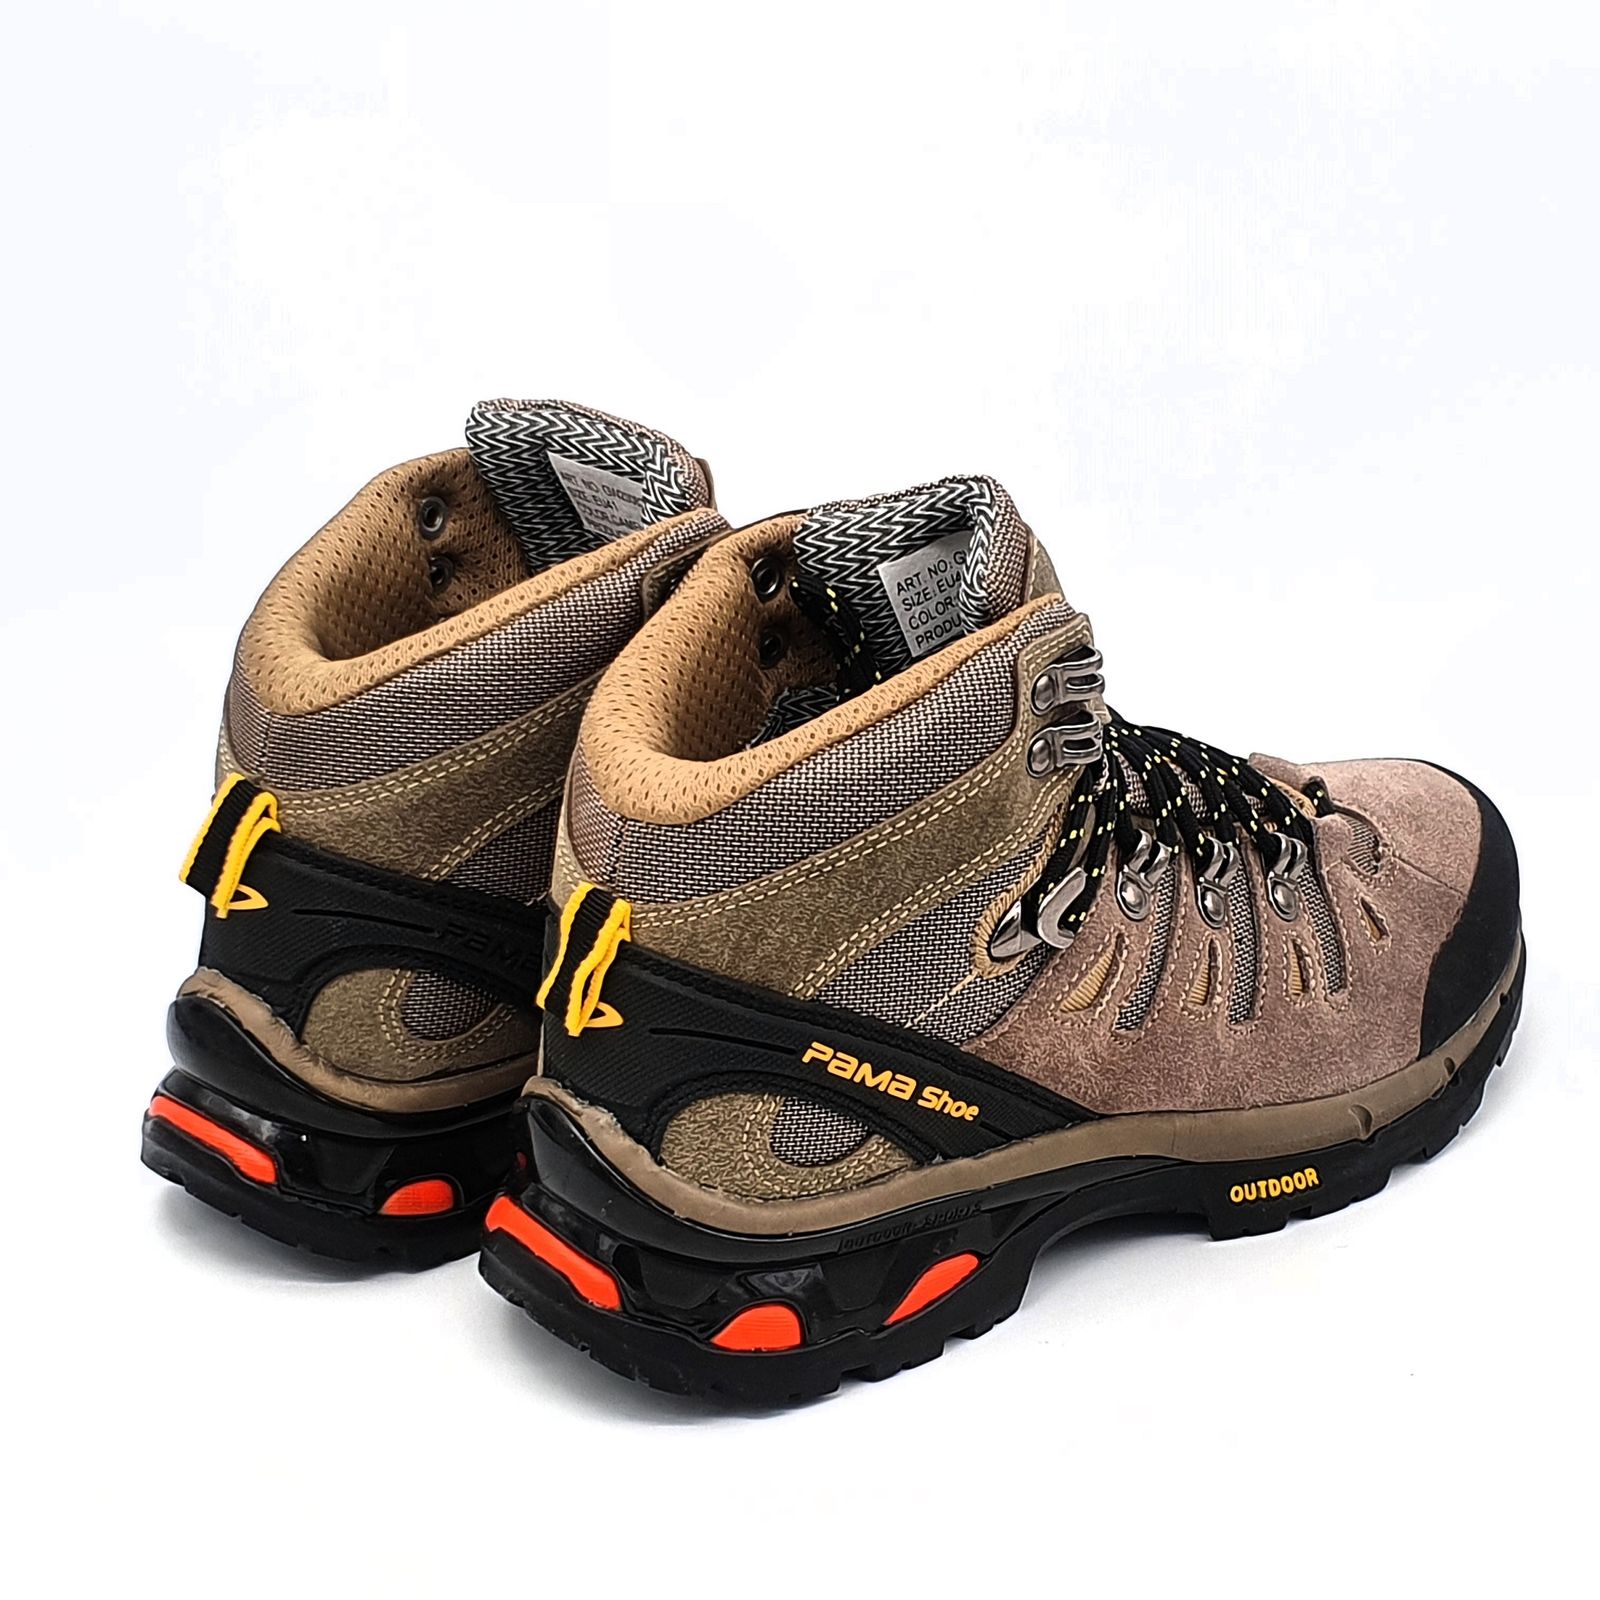 کفش کوهنوردی مردانه پاما مدل NBS-829 کد G1629 -  - 9